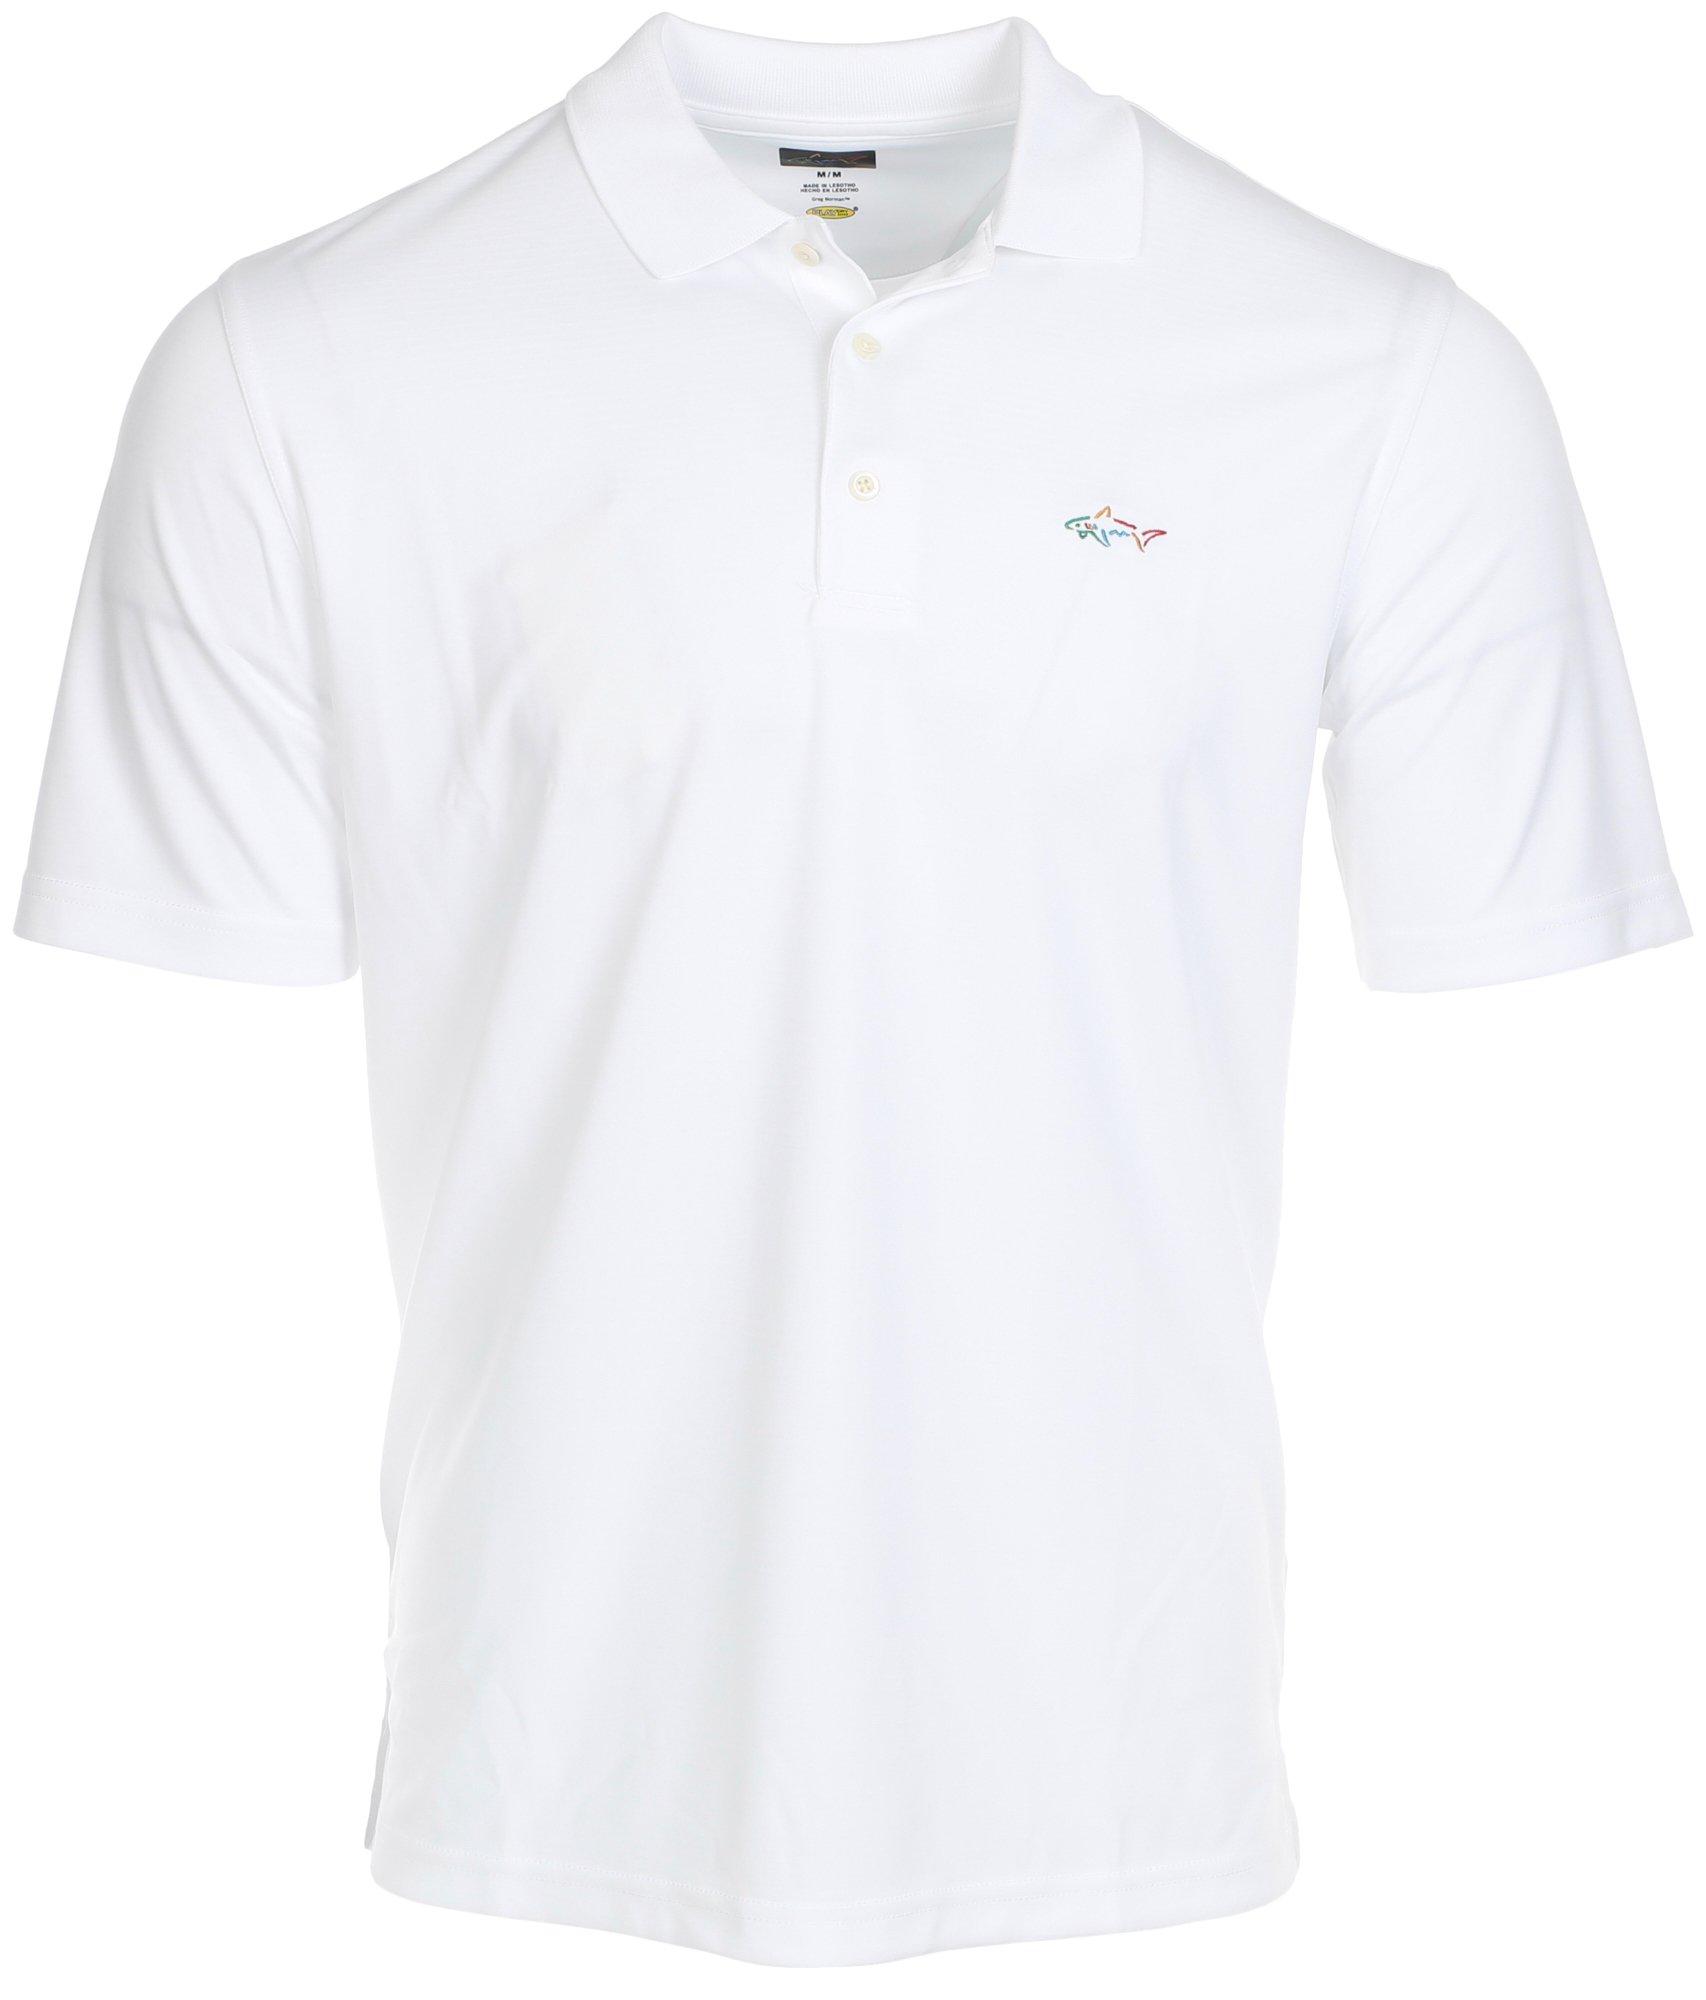 Men's Active Solid Golf Polo Shirt